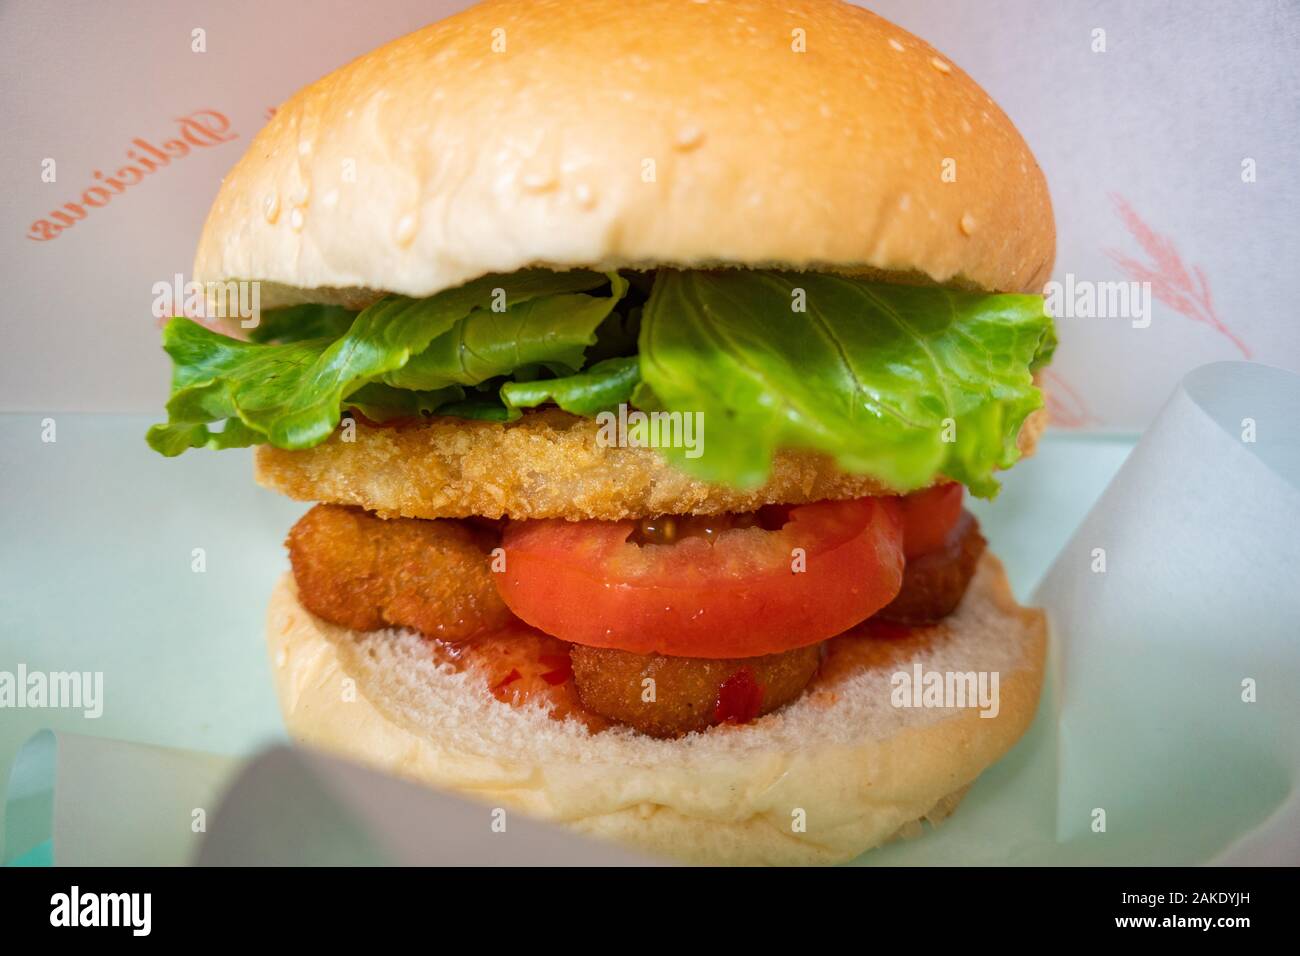 Un burger végétarien végétalien / G de Burger en ville de Tainan, Taiwan. Mock Chicken Nuggets, hash brown, tomate, salade, sauce, dans un petit pain Banque D'Images